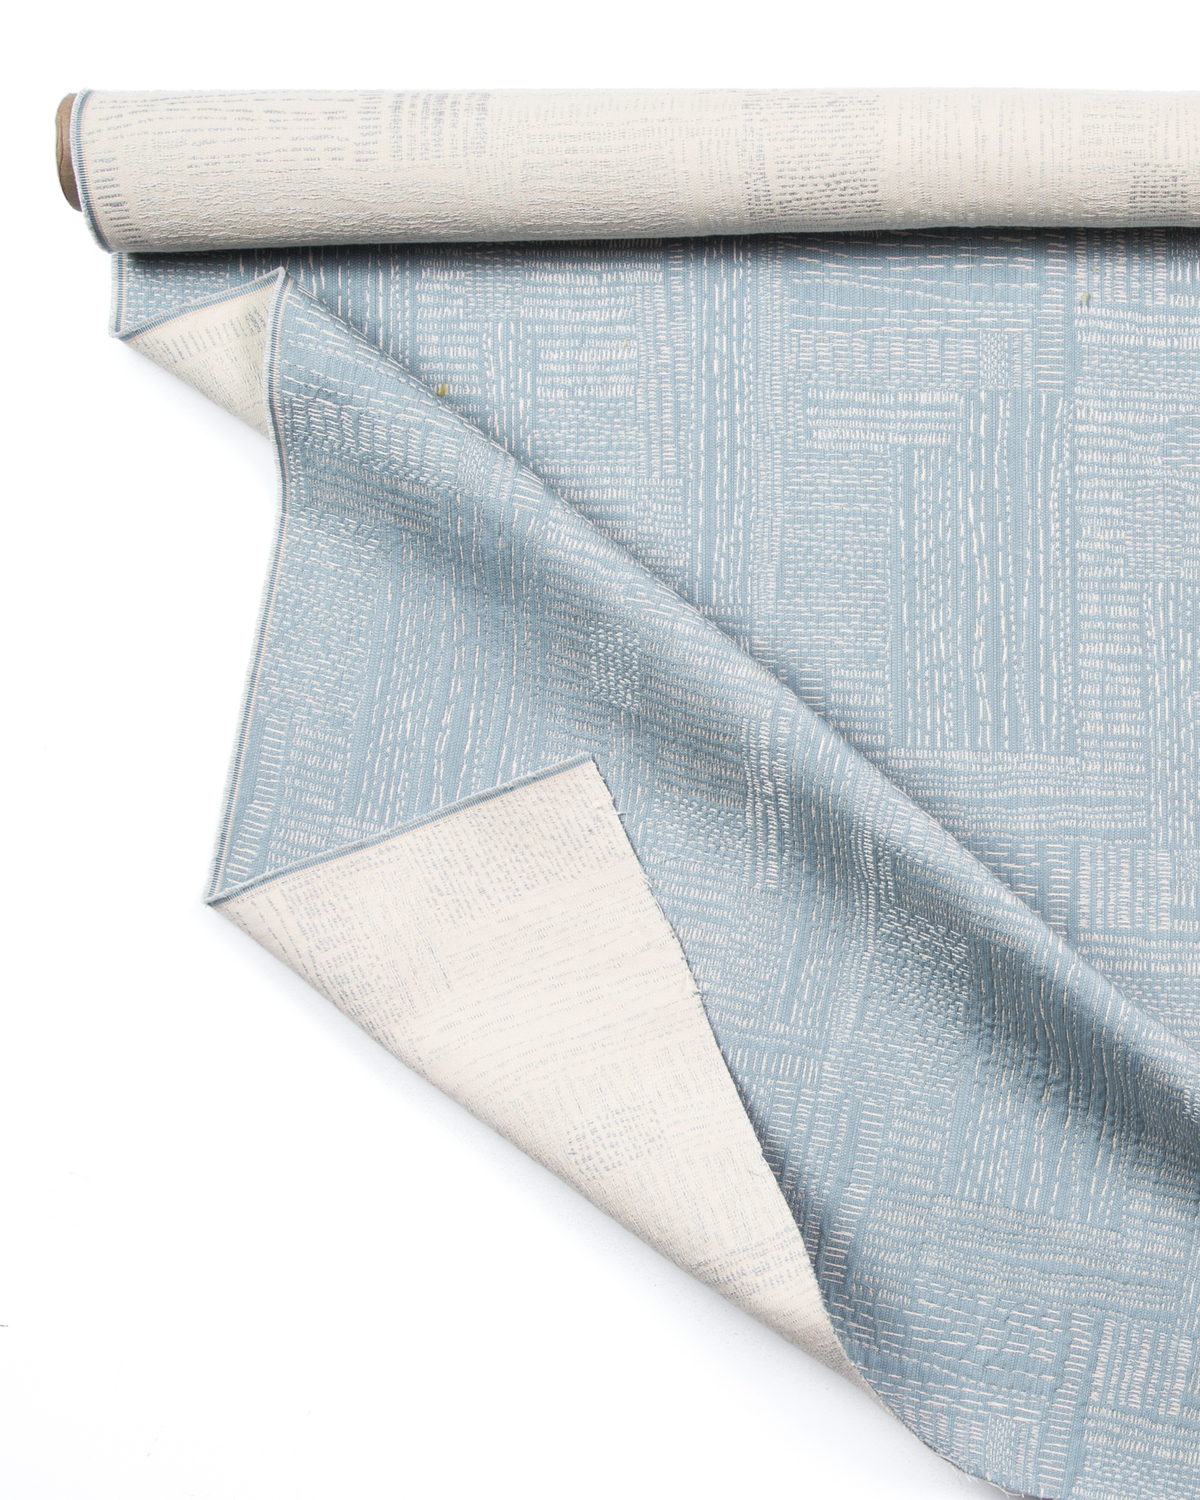 sashiko fabric 55 linen 45 cotton